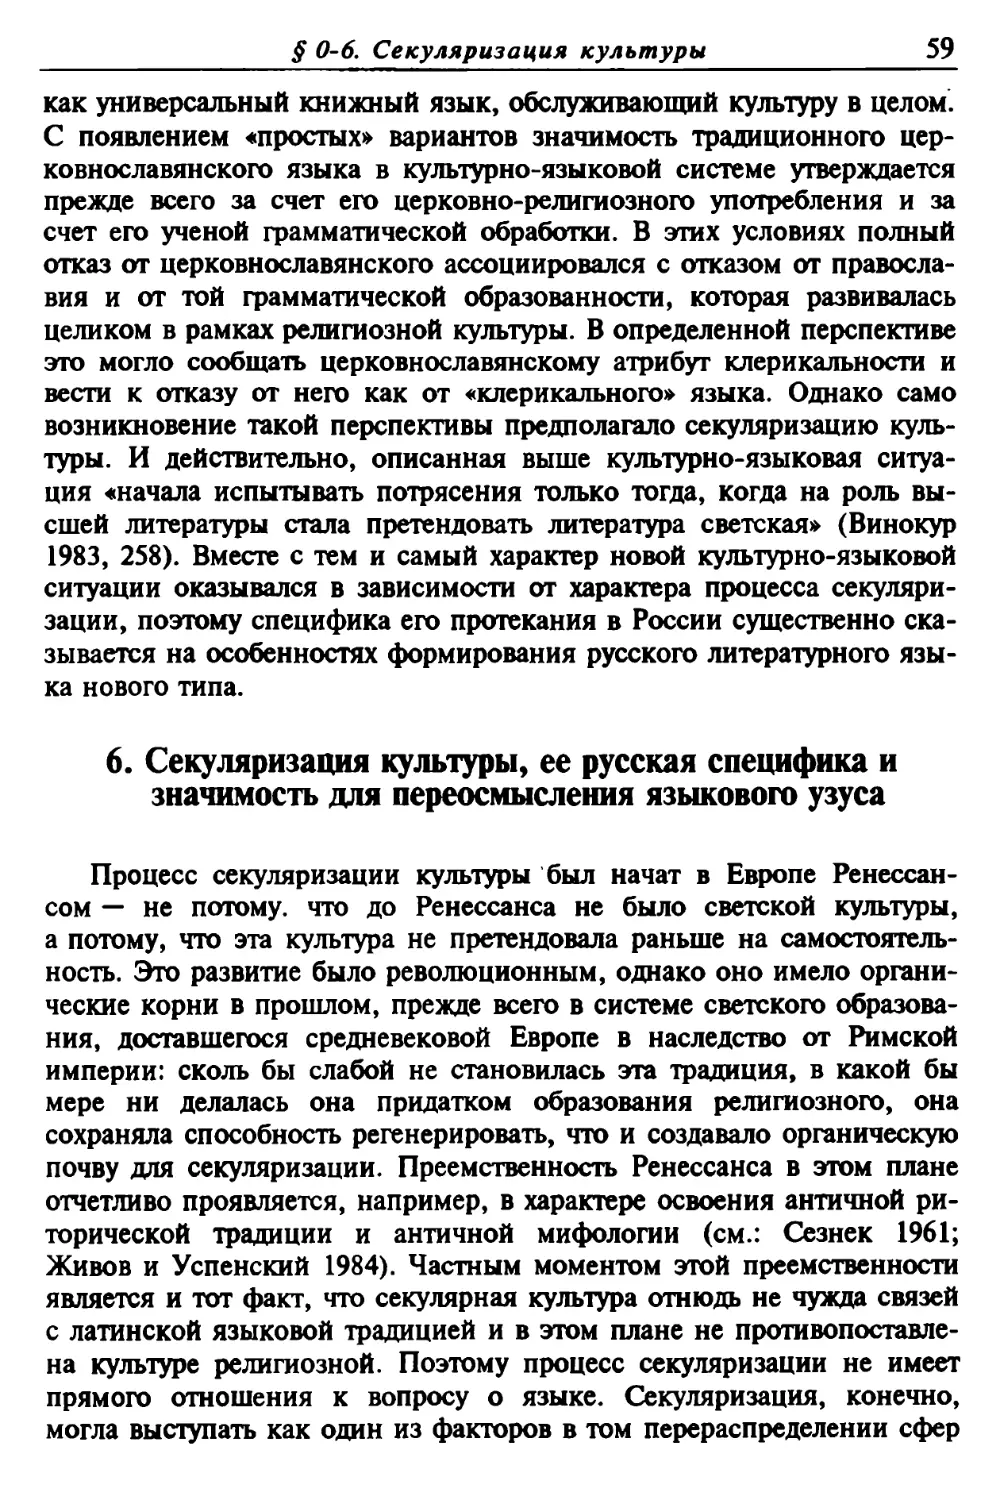 6. Секуляризация культуры, ее русская специфика и значимость для переосмысления языкового узуса